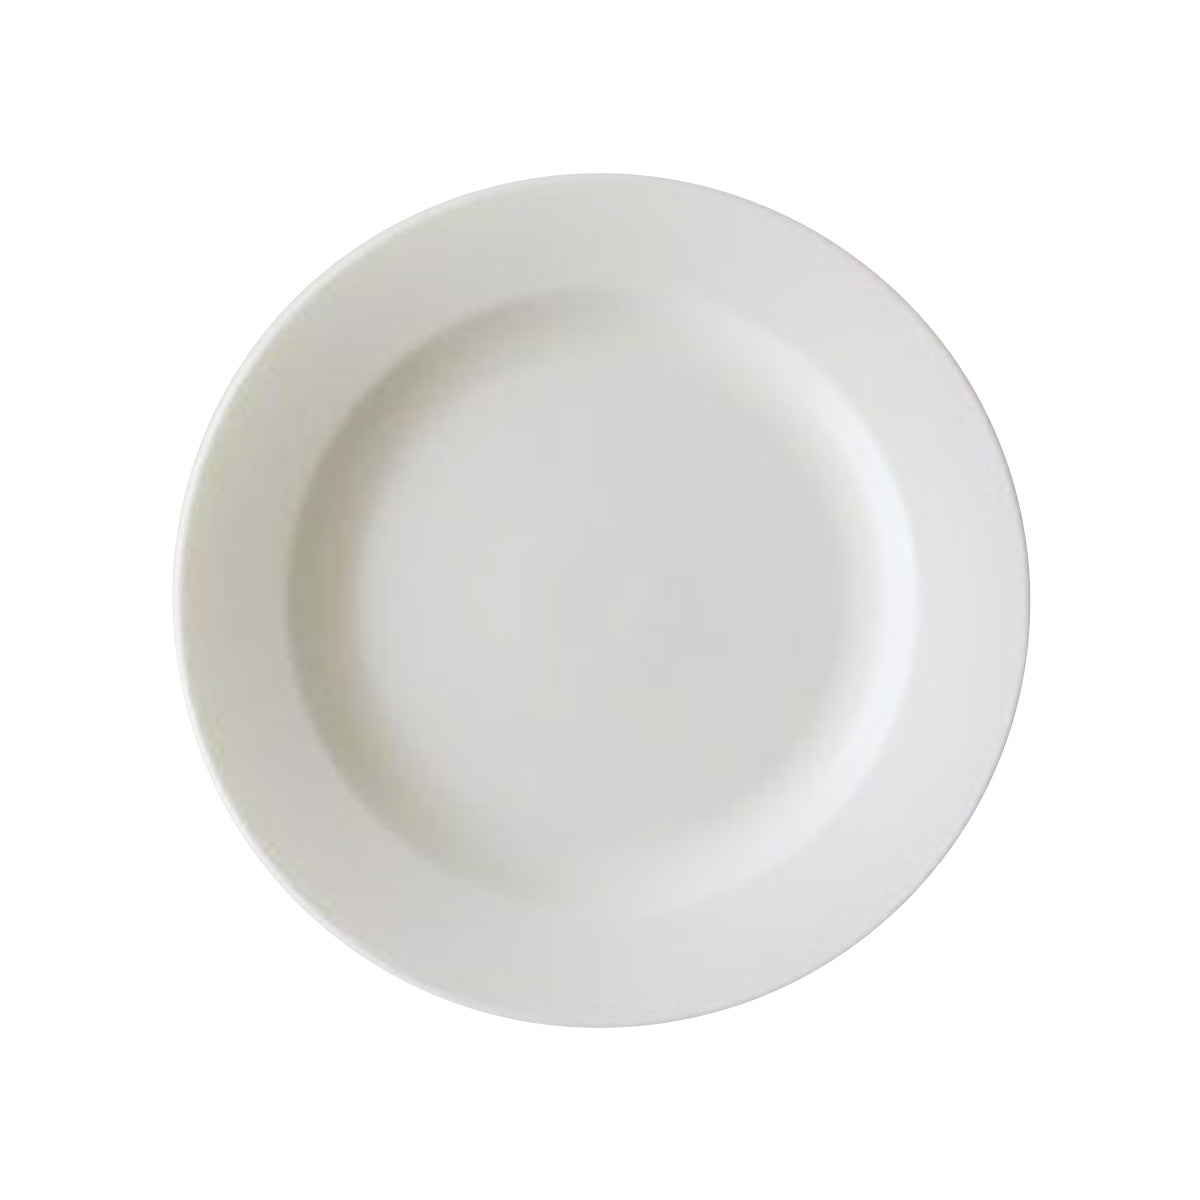 深皿 スープ皿 プレート Tokinone PB. リムプレート6.0皿 アイボリー 19.5cm 049220